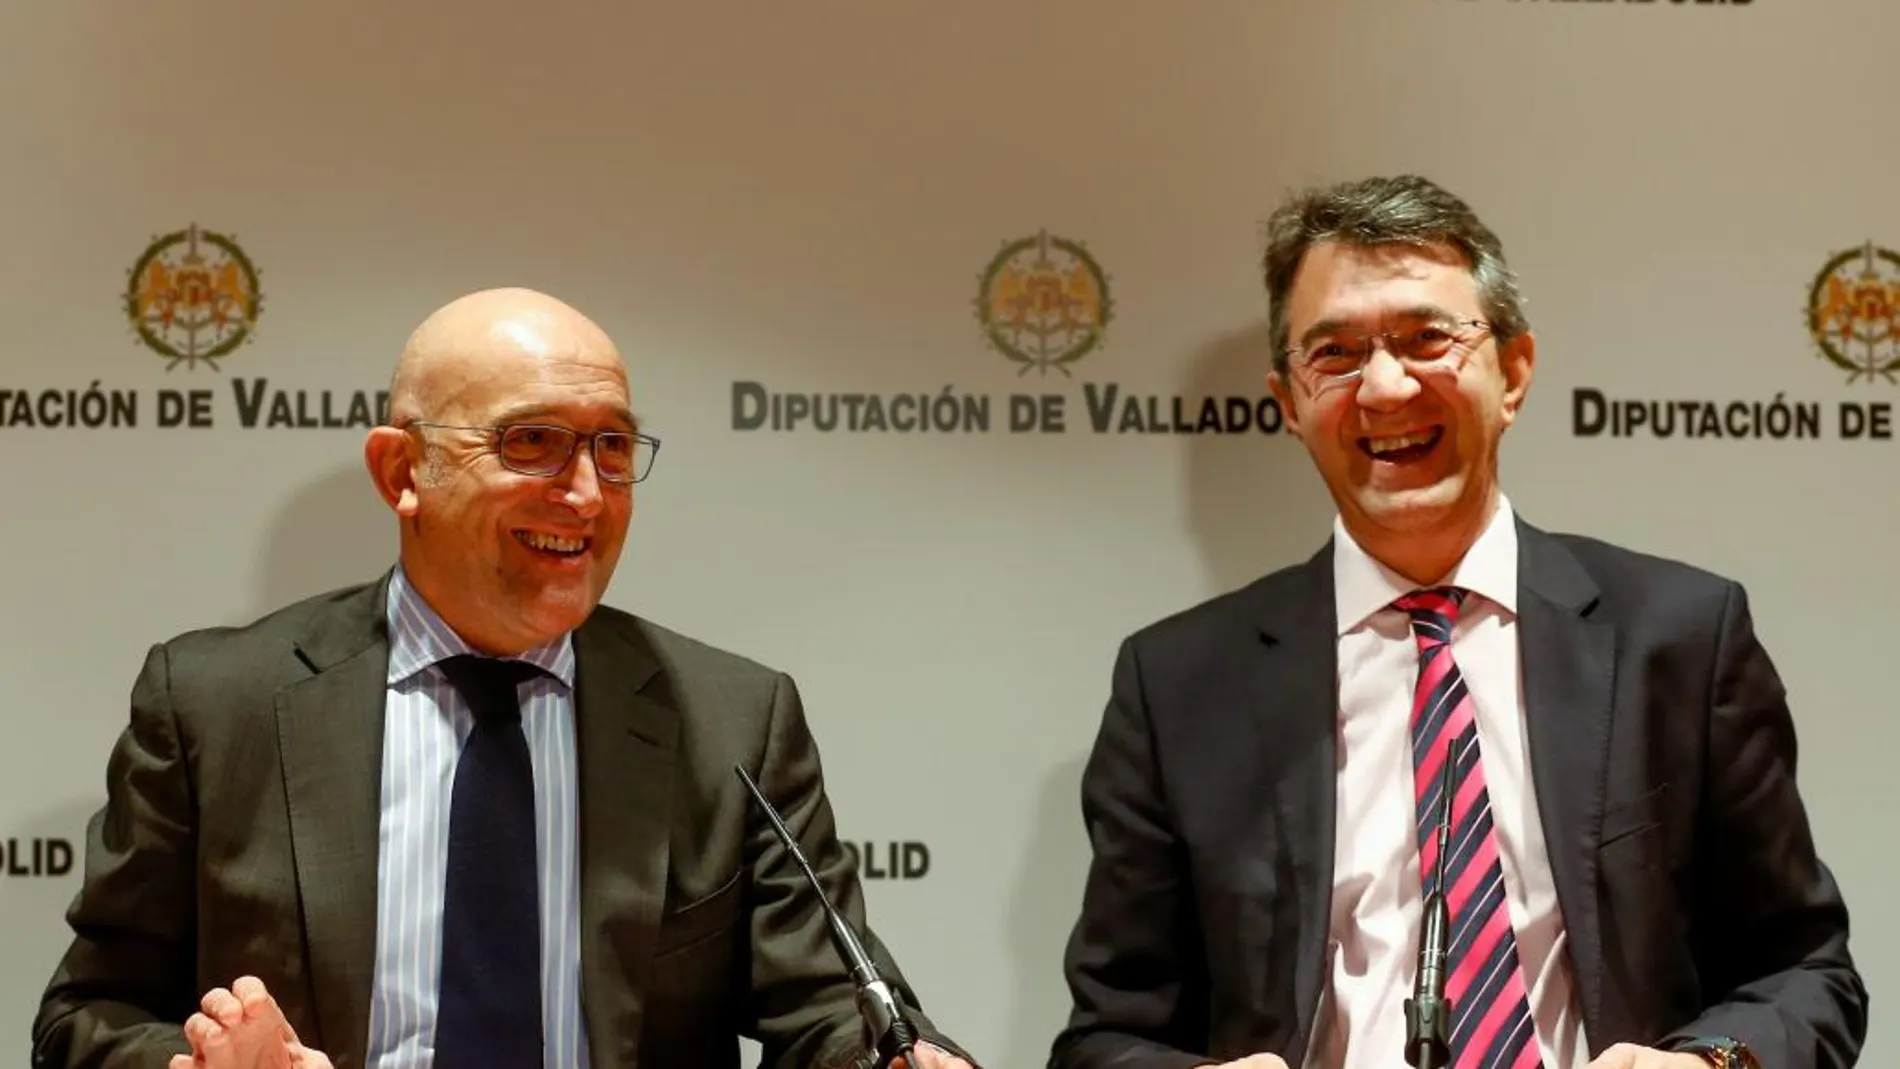 Los presidentes de las diputaciones de Valladolid y León, Jesús Julio Carnero y Juan Martínez Majo